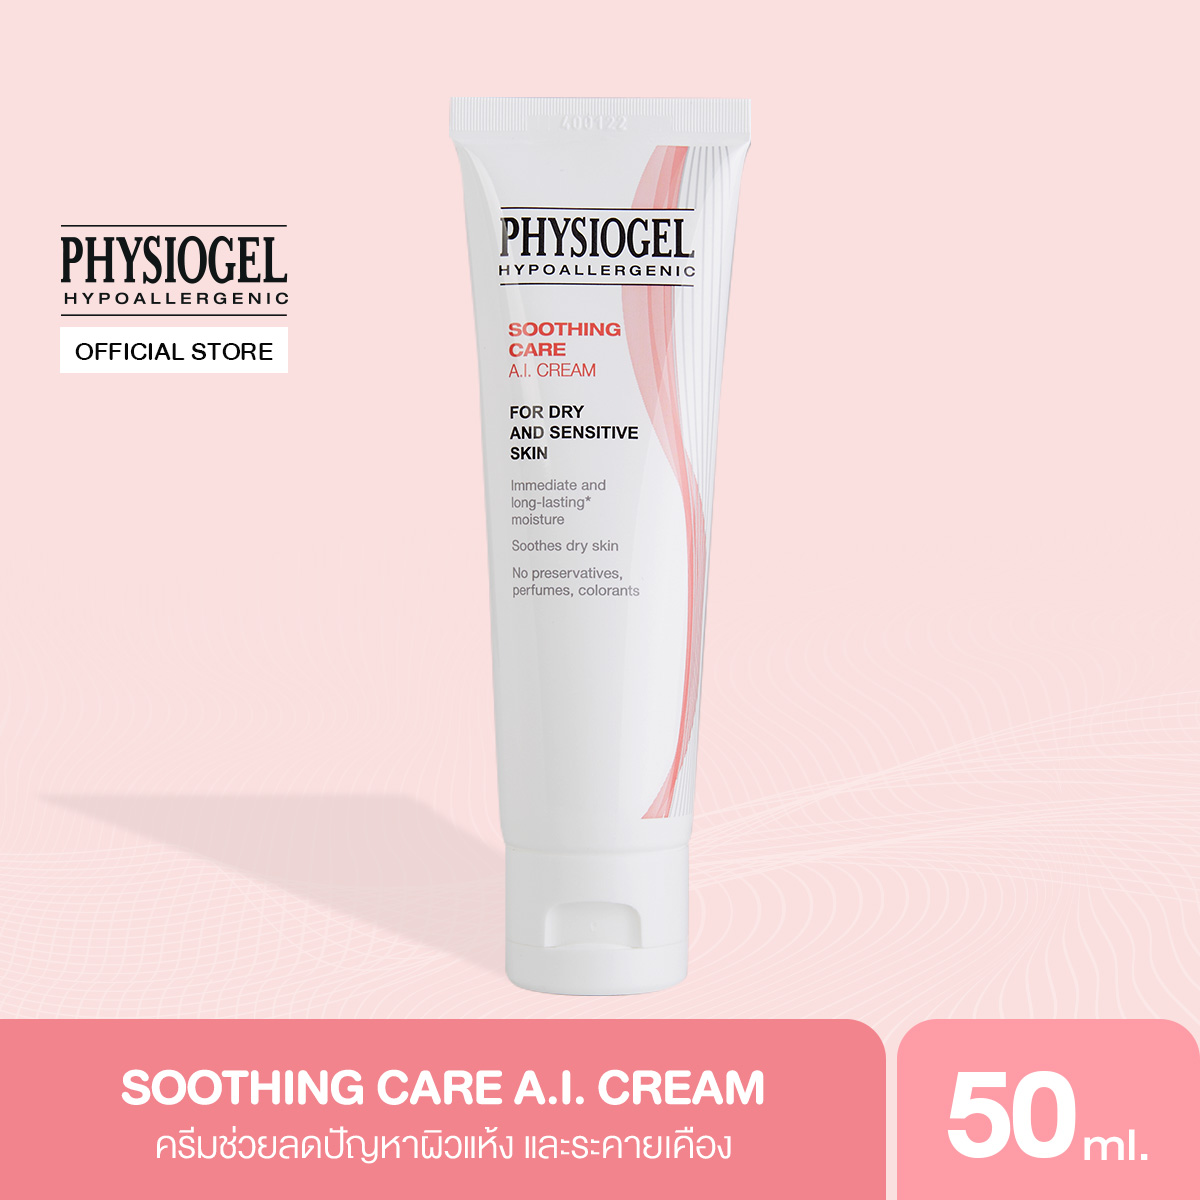 โปรโมชั่น Physiogel ฟิสิโอเจล ซูธธิ่ง แคร์ เอ.ไอ. ครีม สำหรับผิวแห้งที่ไวต่อการระคายเคือง 50 มล. Physiogel Soothing Care A.I. Cream for Dry, Irritated, Sensitive Skin, 50ml